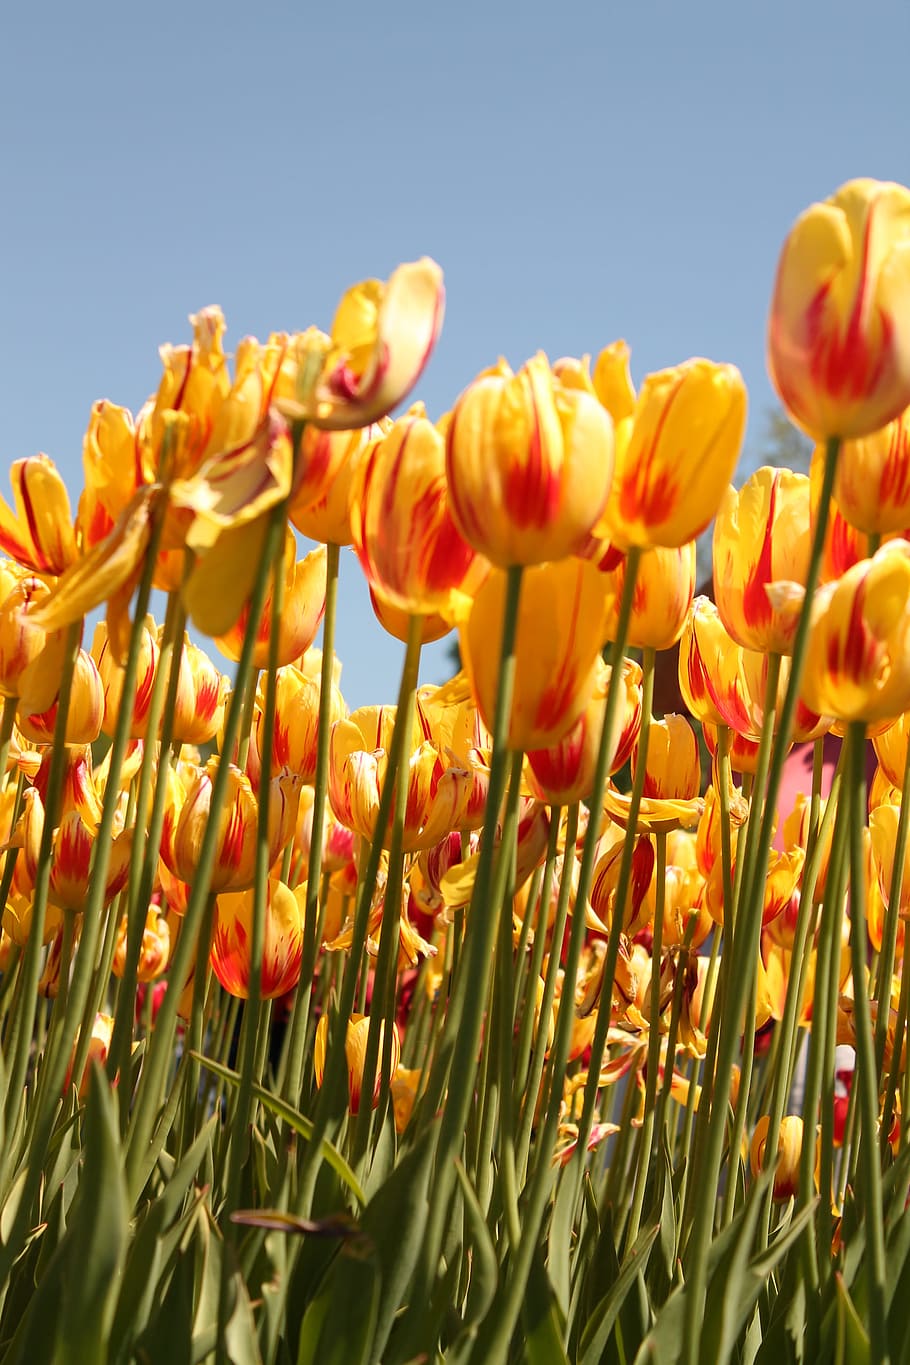 bidang festival bunga tulip, tulip, festival, bunga, pertanian, tanaman, tanaman berbunga, keindahan di alam, pertumbuhan, langit